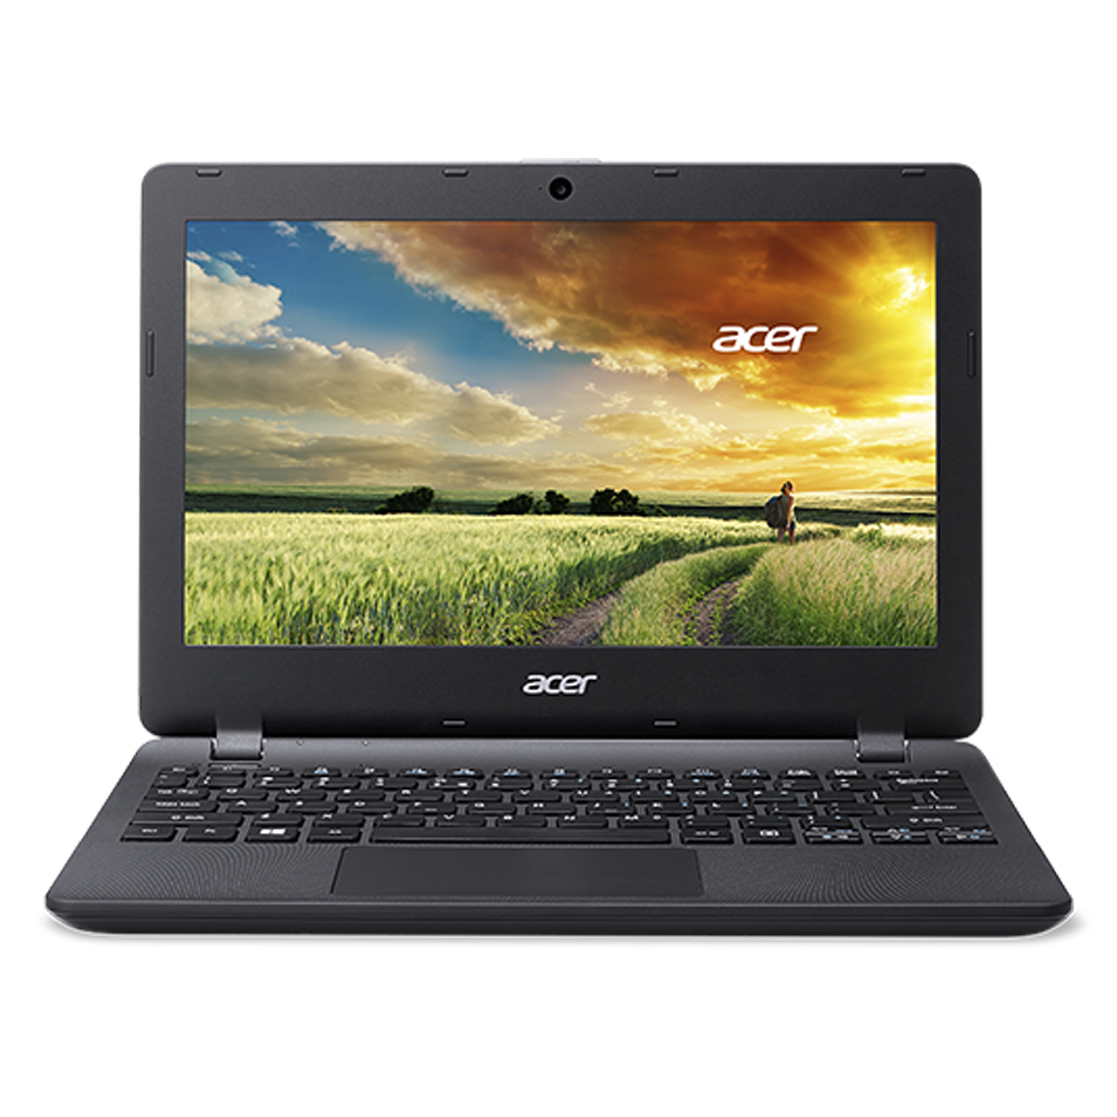 Acer ES1 533 N4200